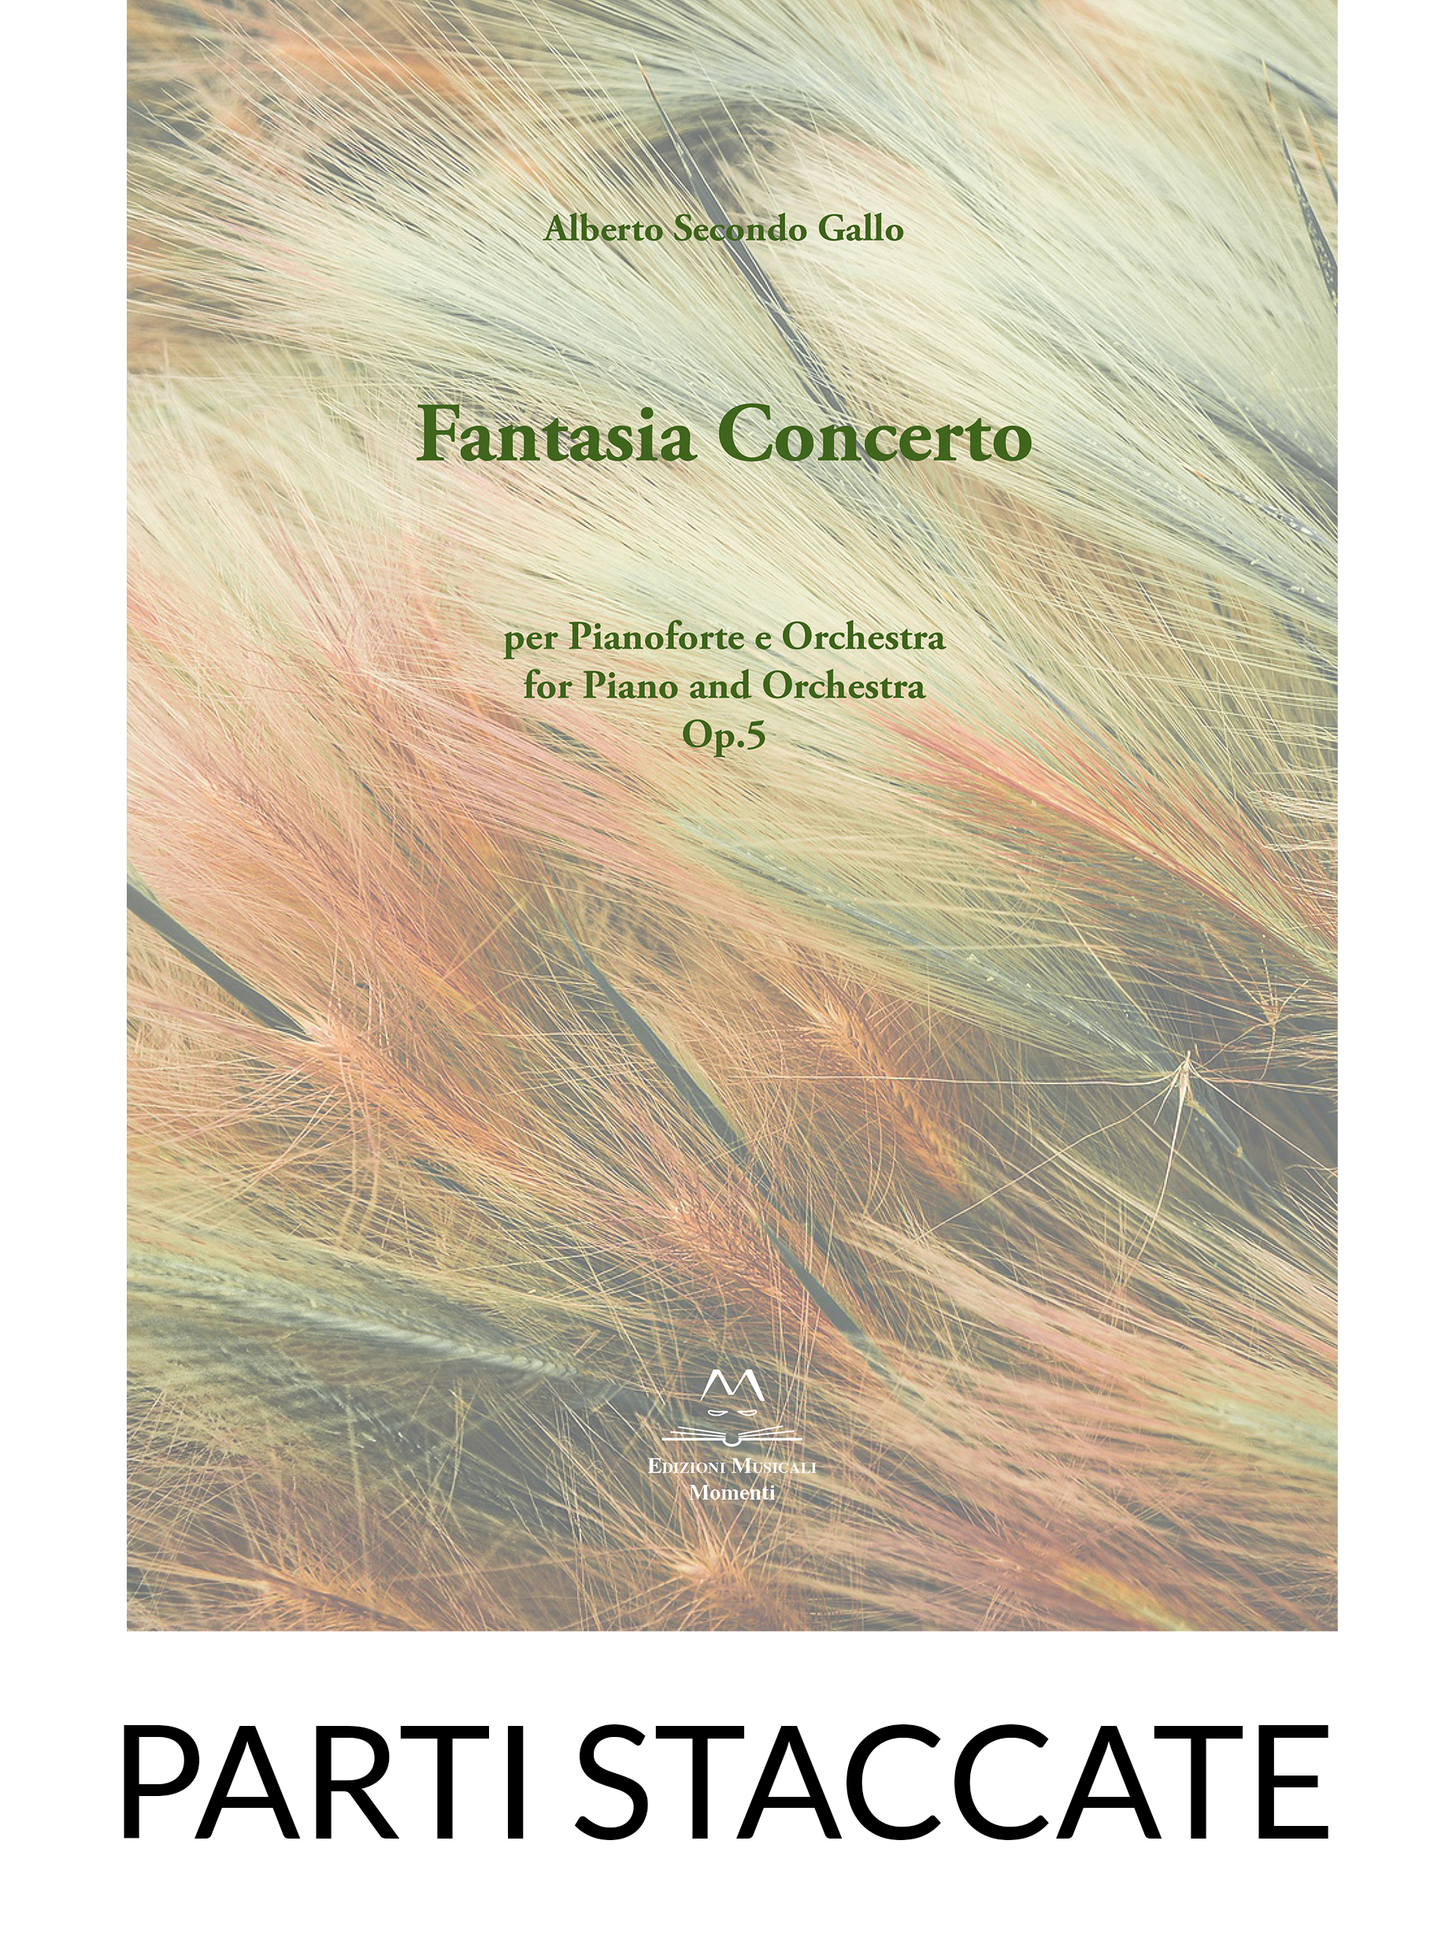 Fantasia Concerto op.5 per Pf e Orchestra di Alberto Secondo Gallo | Parti staccate